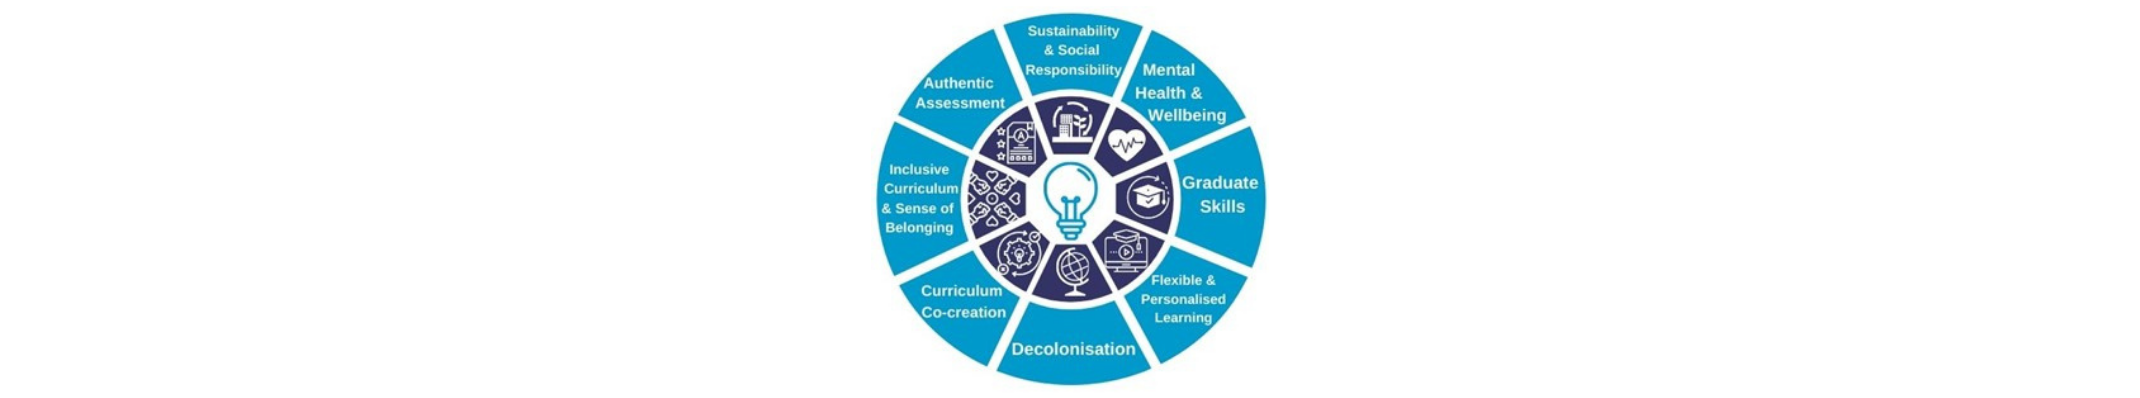 Coventry University's Curriculum 2025 initiative